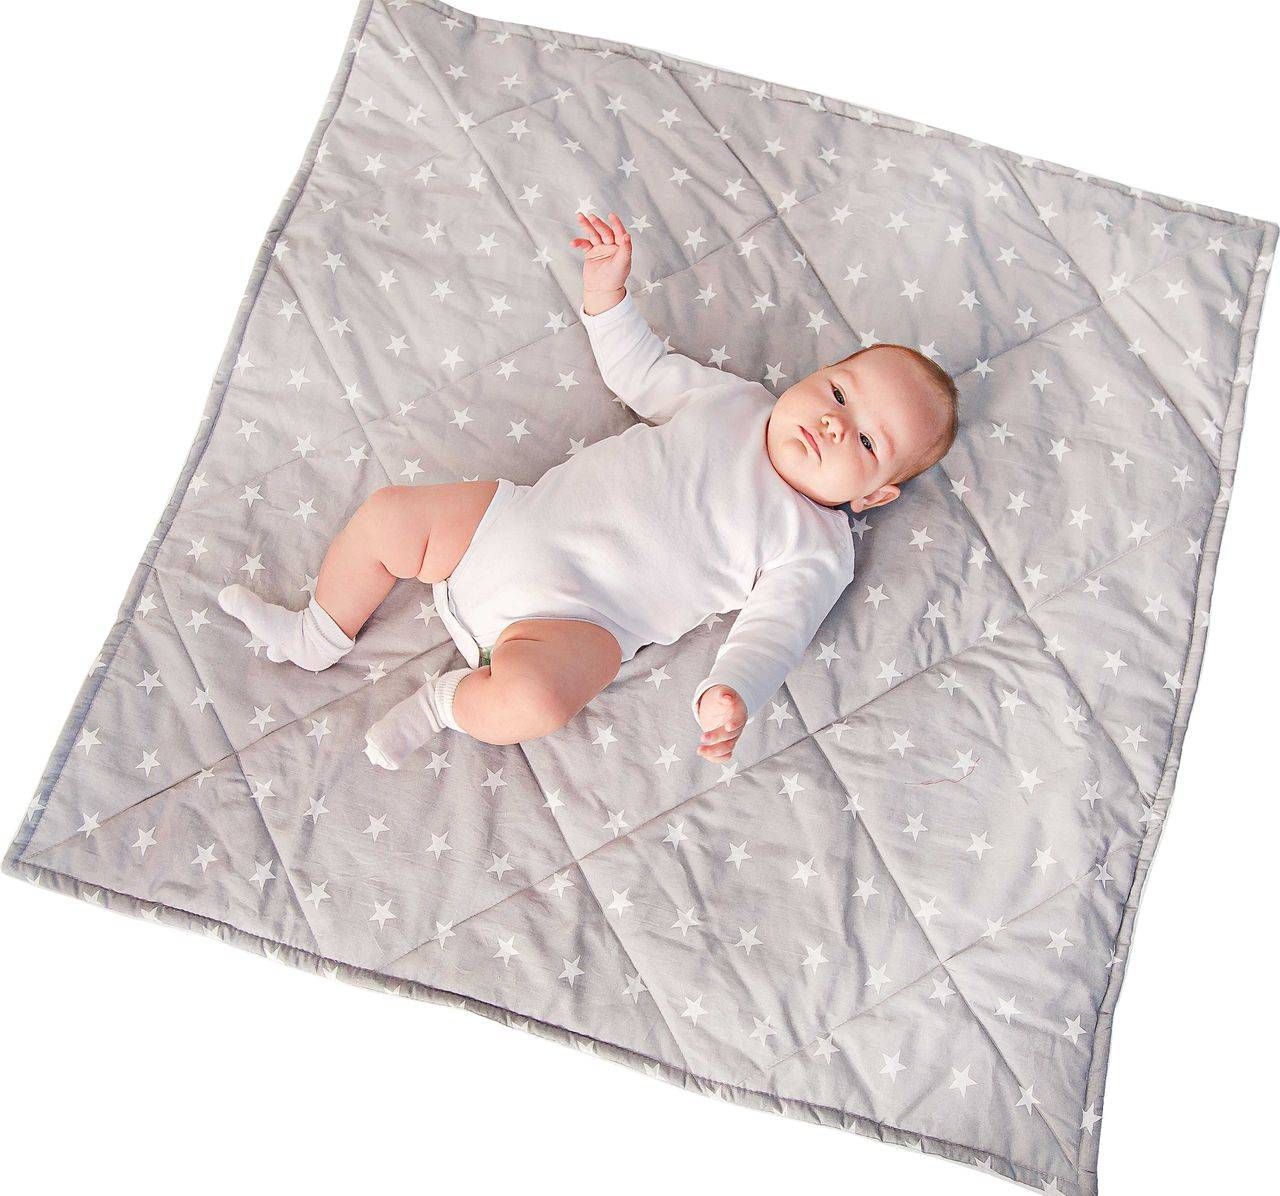 Чем укрывать малыша и какой размер одеяла необходим для новорожденного в кроватку?